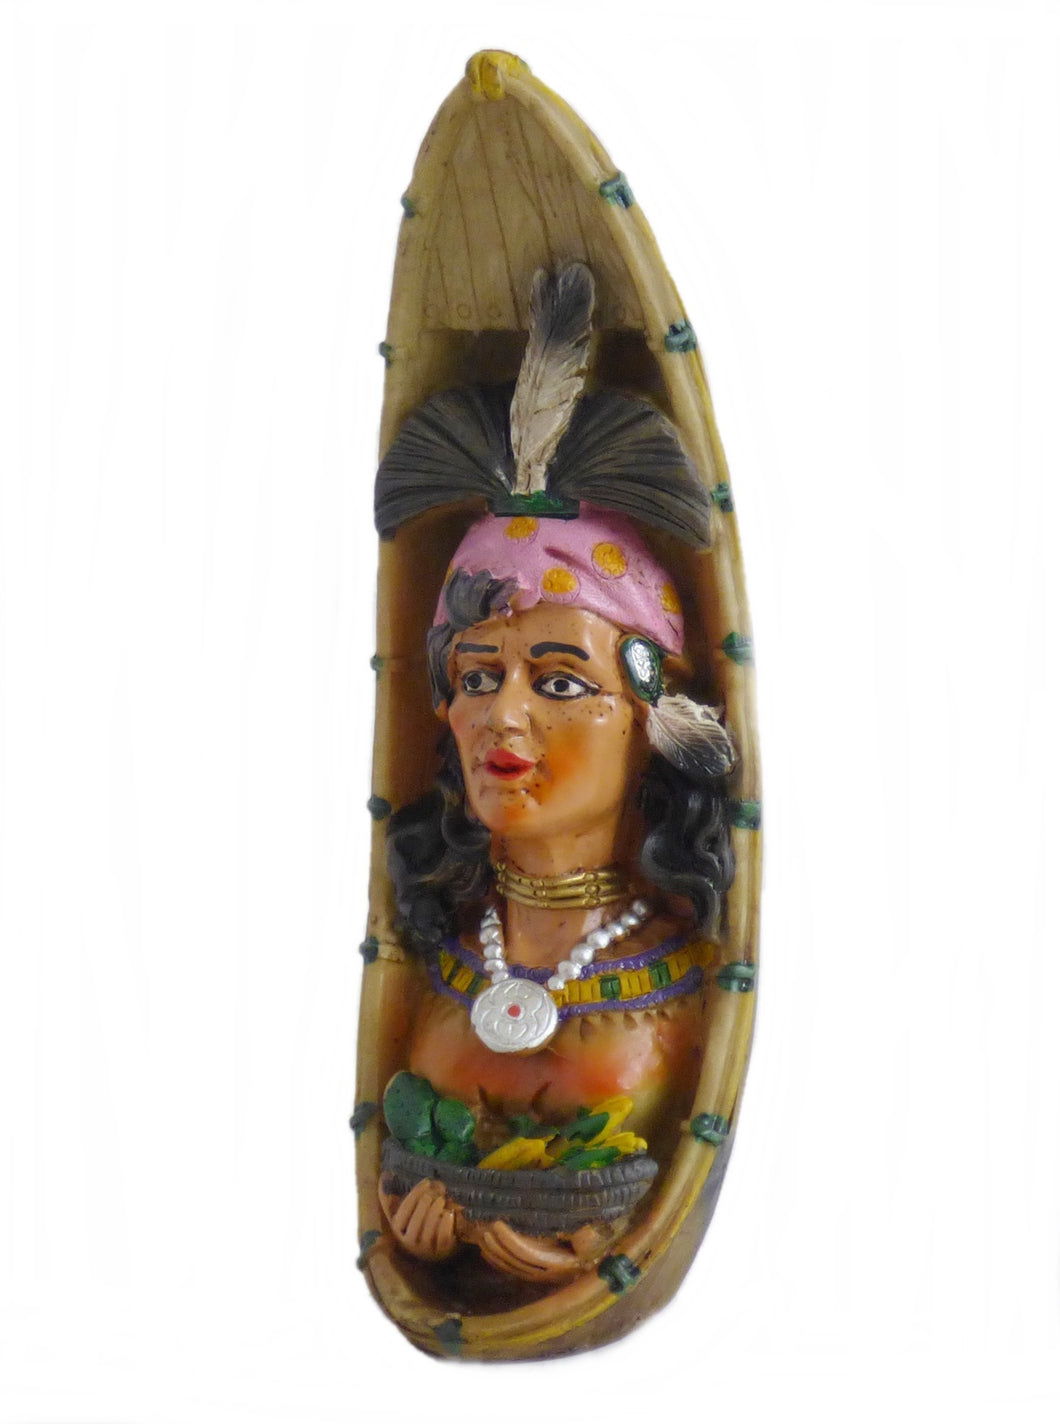 Indianer Figur Kanu Einbaum Westerndekoration 4 Variationen 22,5 cm